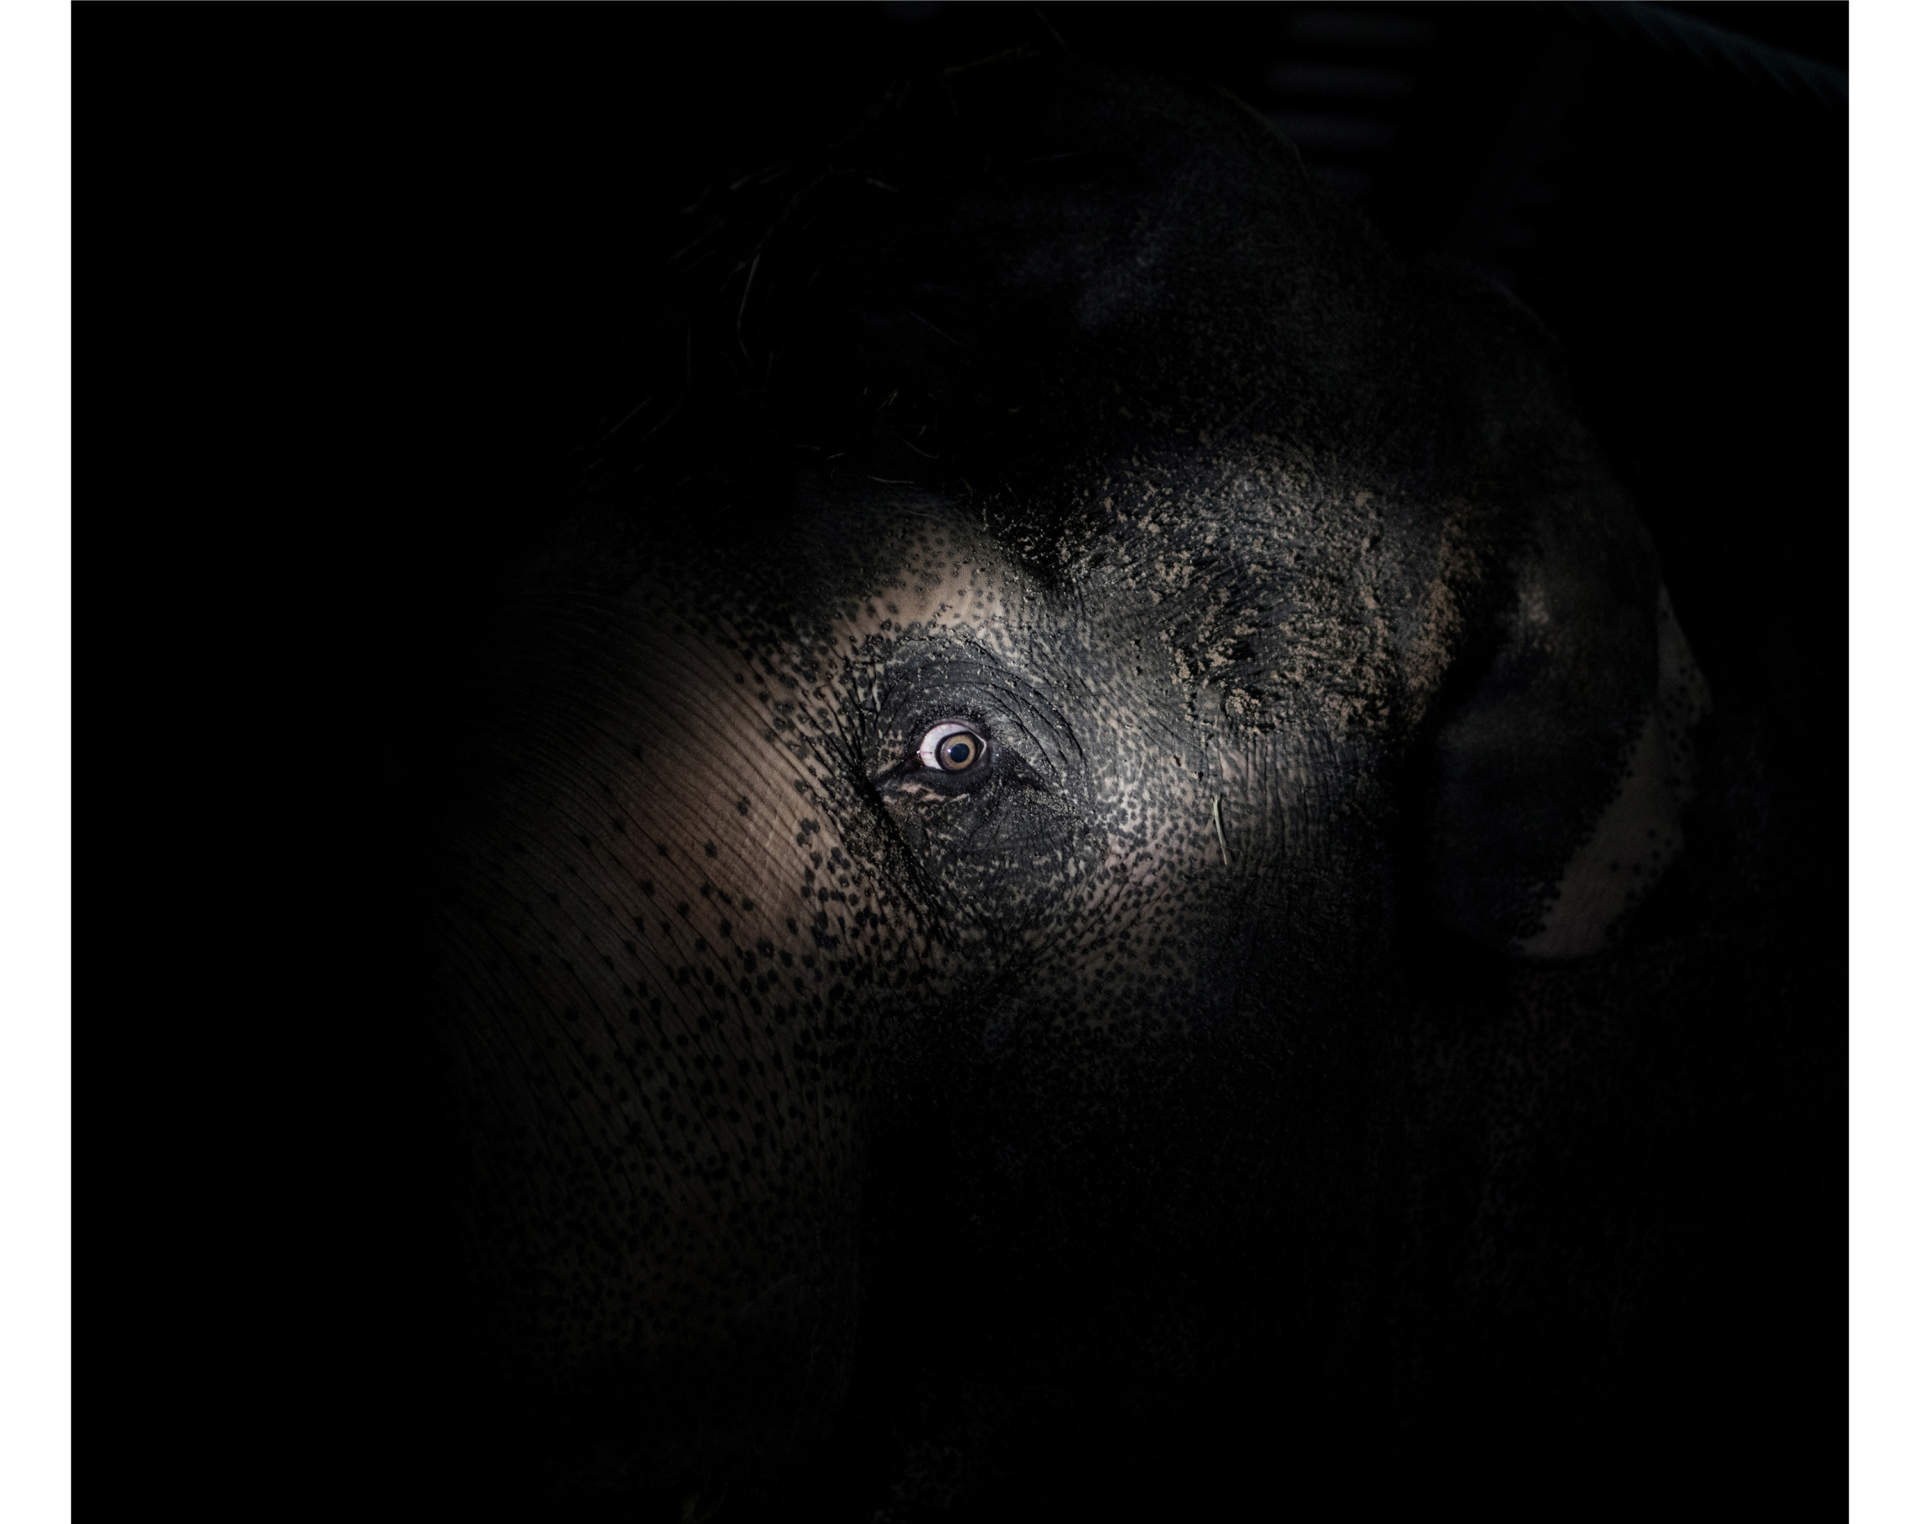 Forskare har kommit fram till att vilda elefanter endast sover i snitt två timmar per dygn. Ibland sover de inte alls. Elefanter i djurparker däremot, som asiatiska elefanten Tonsak på Kolmårdens zoo, sover desto längre.